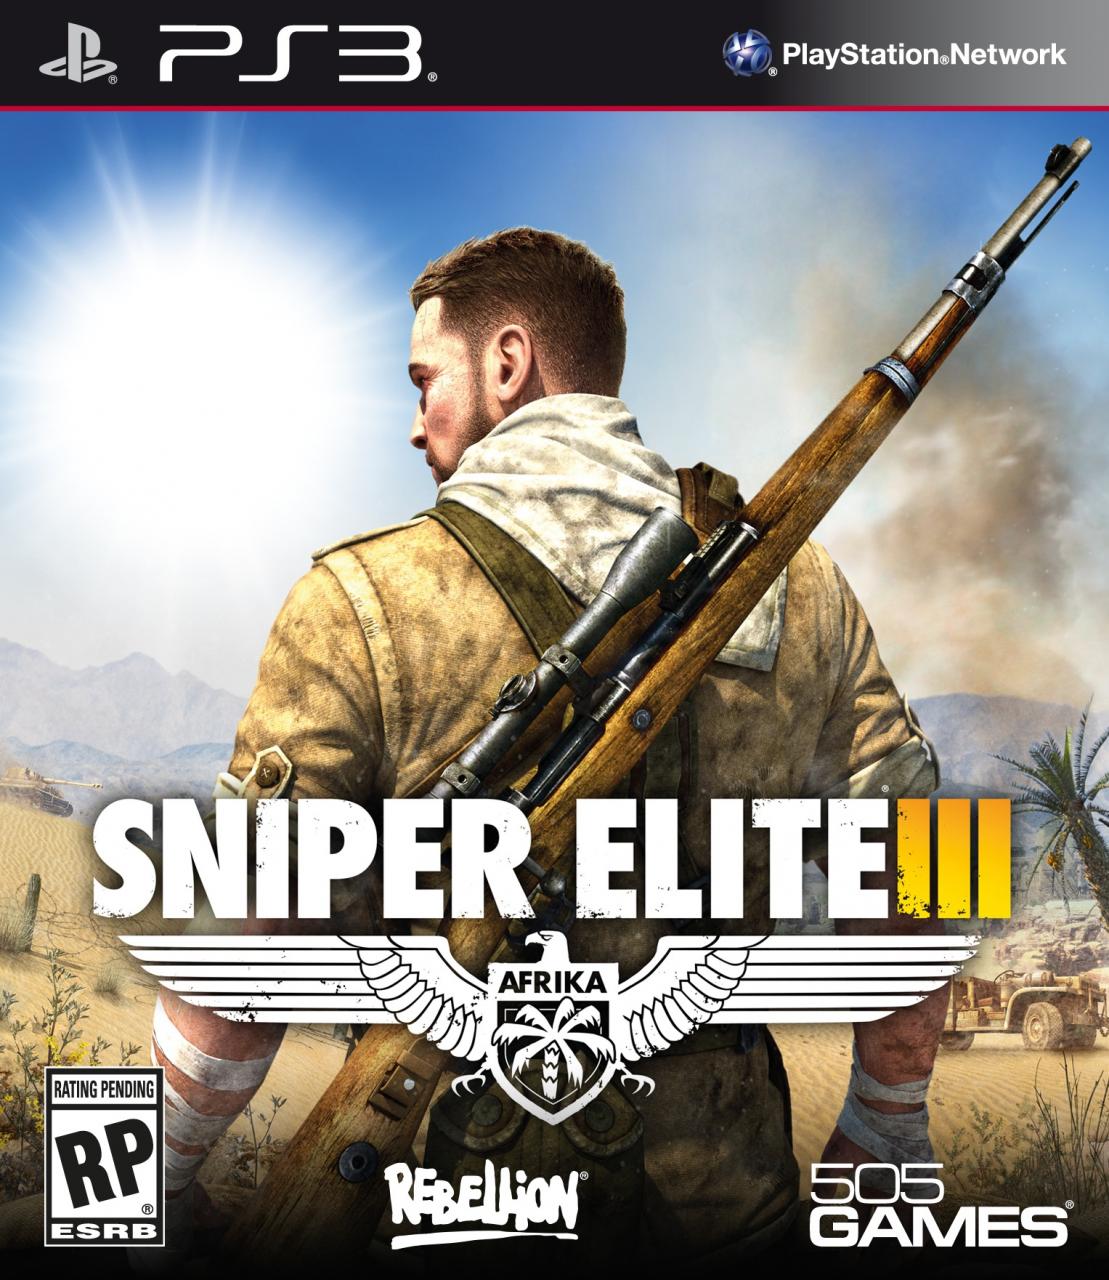 sniper elite 3 trainers